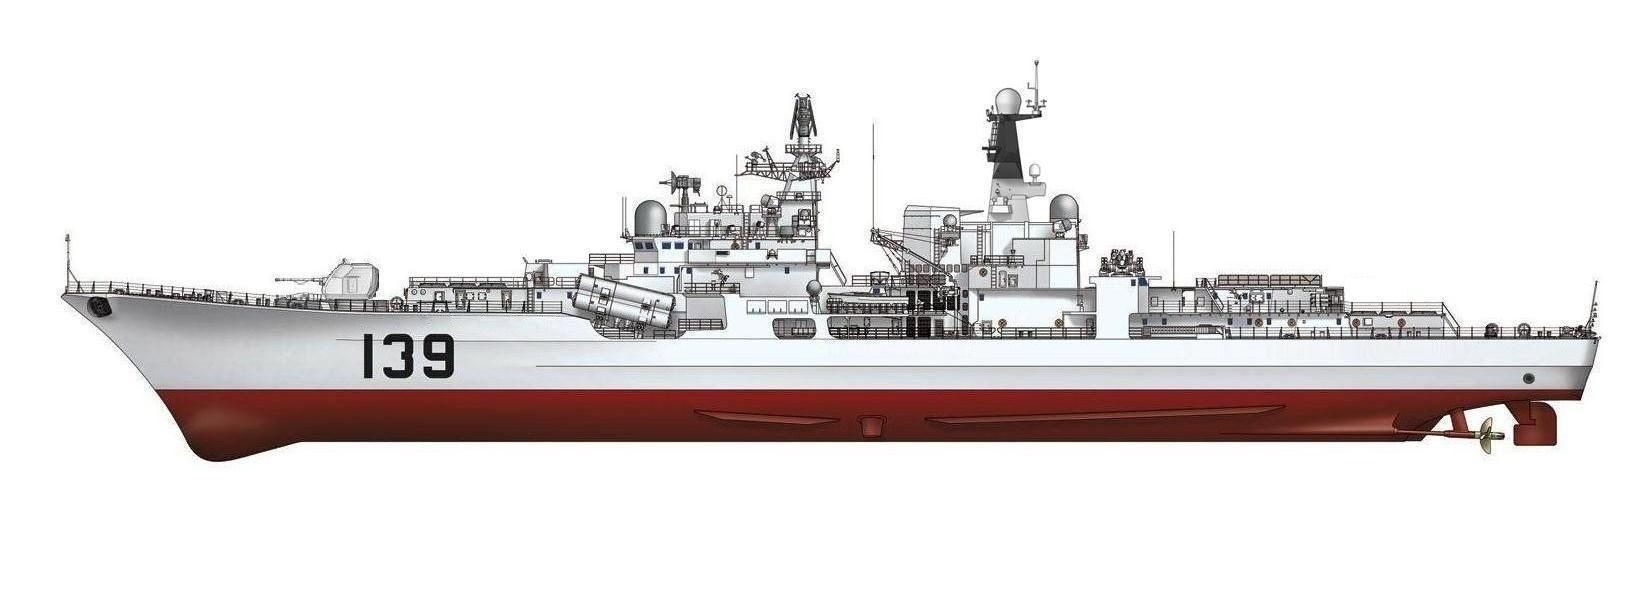 寧波號驅逐艦側視圖